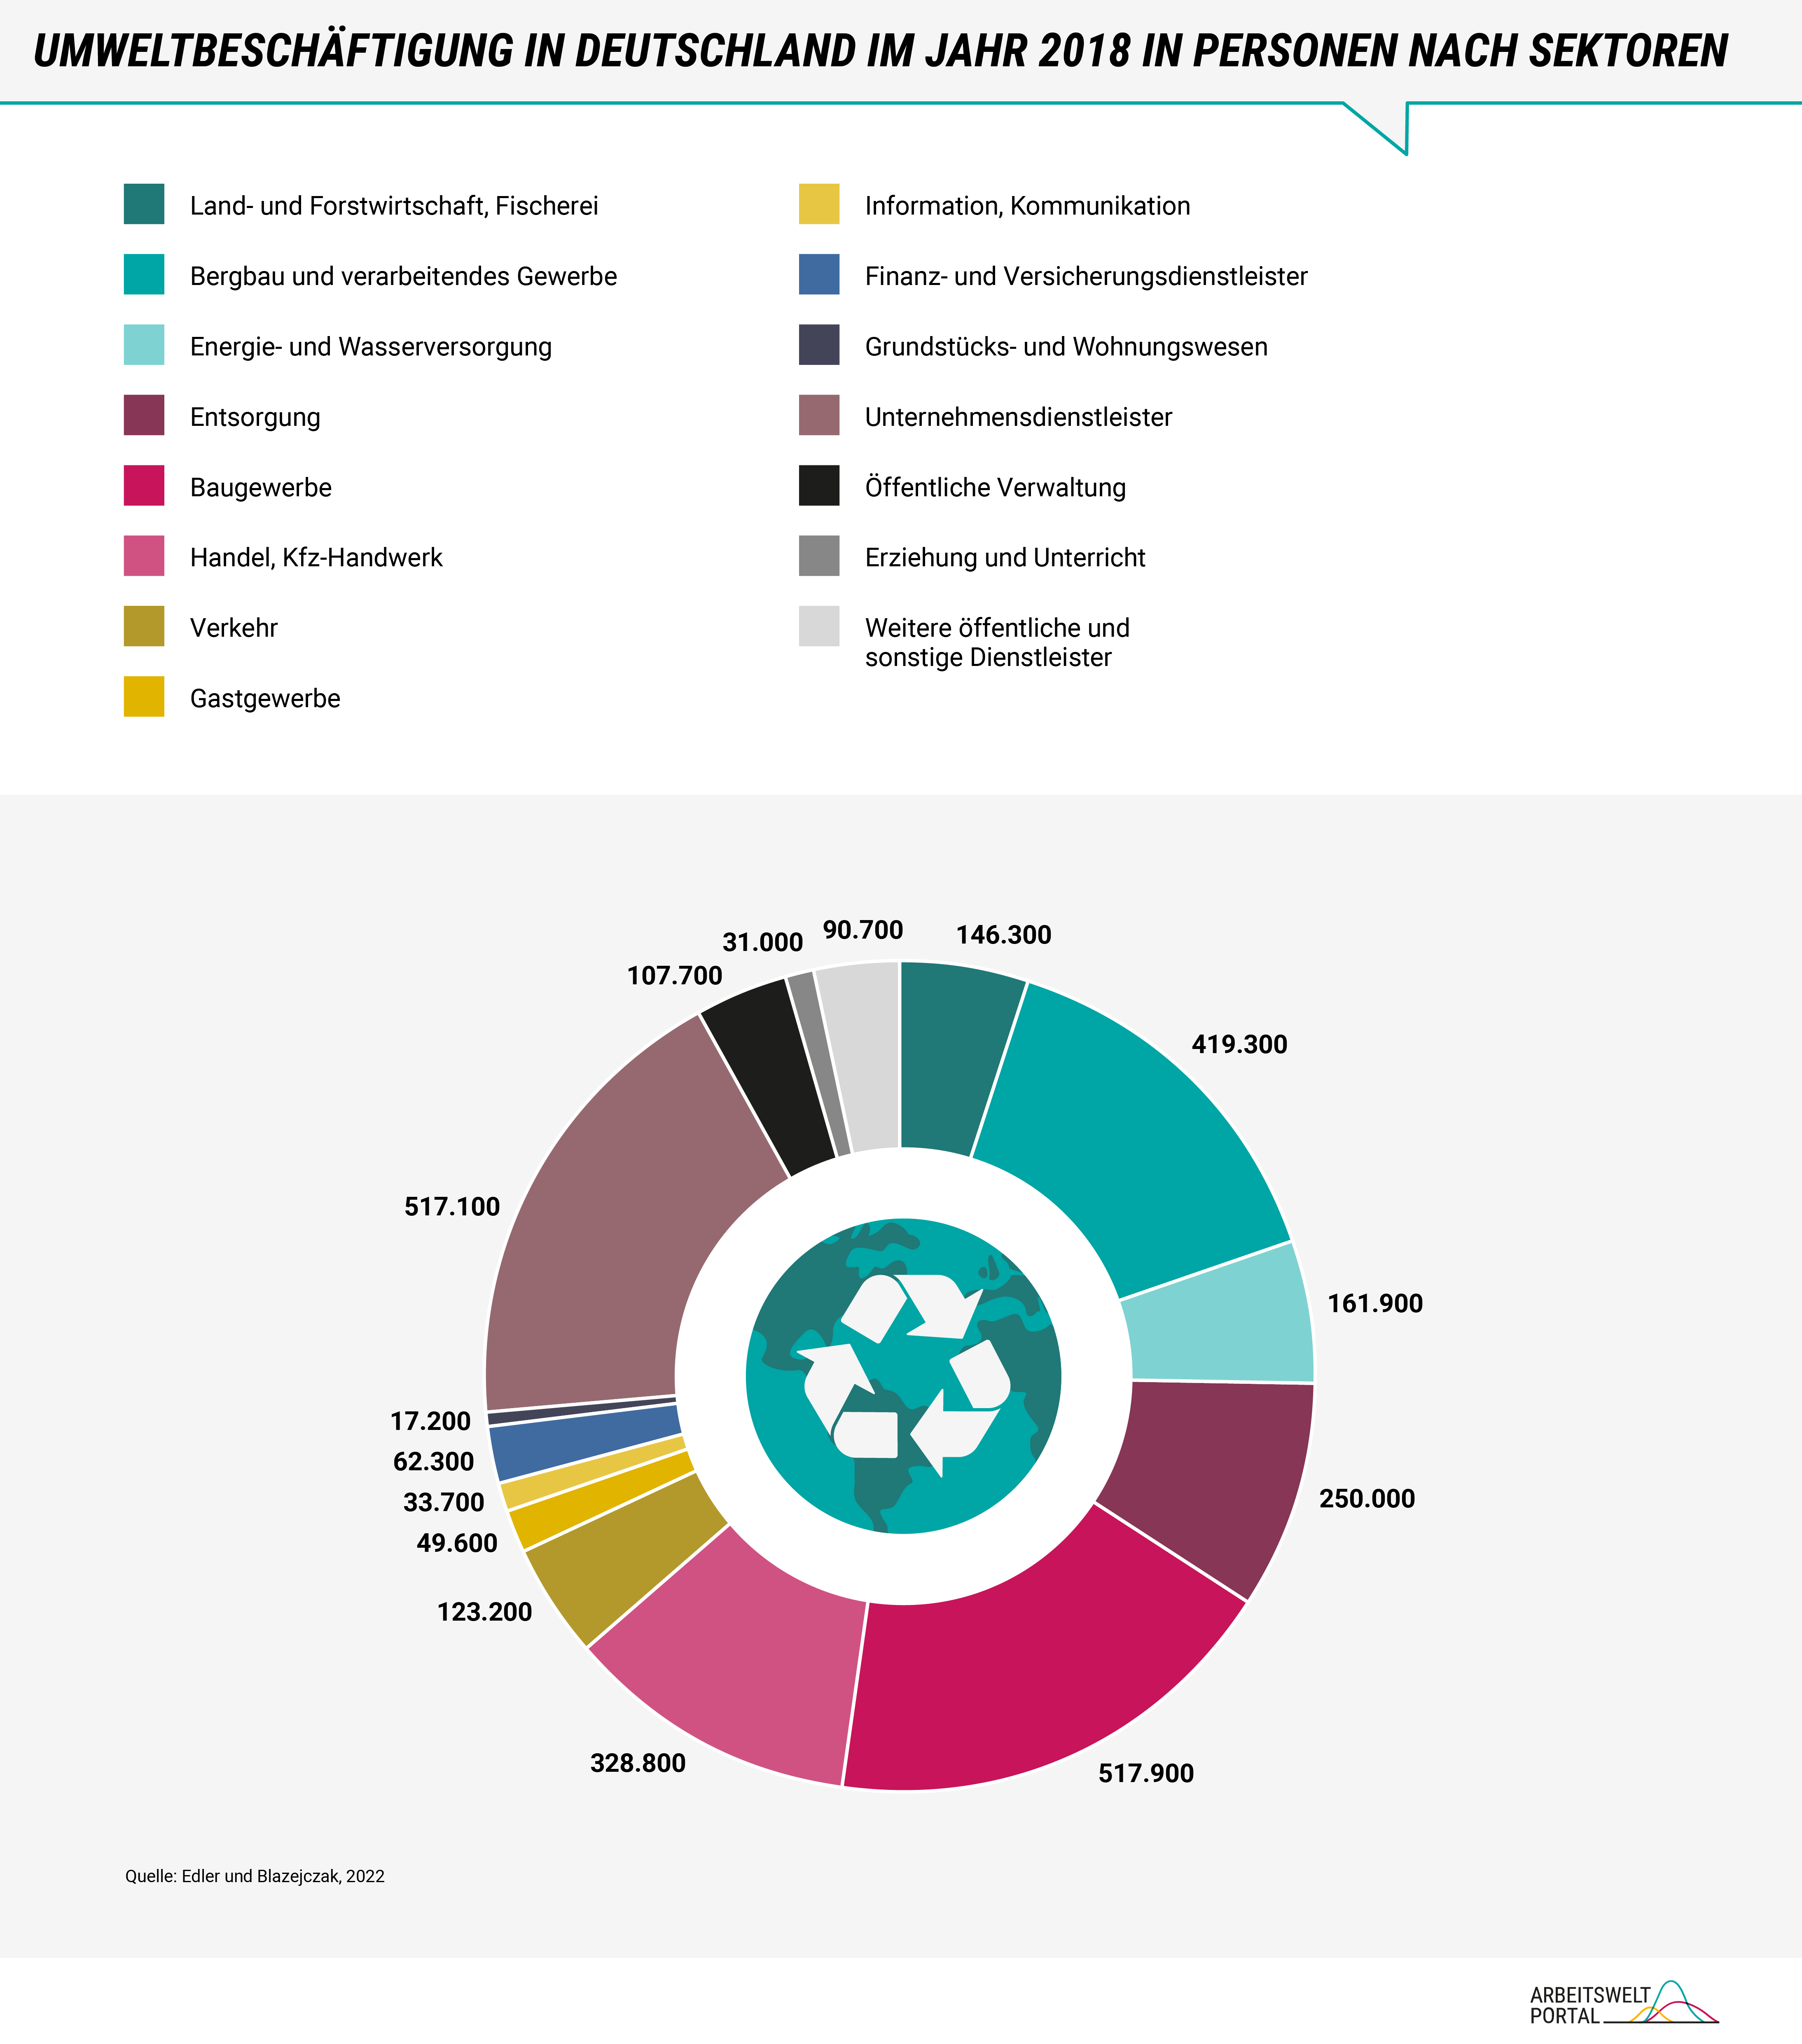 Das Kreisdiagramm zeigt die Anzahl der Personen in Bereich der Umweltbeschäftigung in Deutschland im Jahr 2018, aufgeteilt nach Sektoren. Die größte Branche ist das Baugewerbe mit über 517 tausend Beschäftigten. 